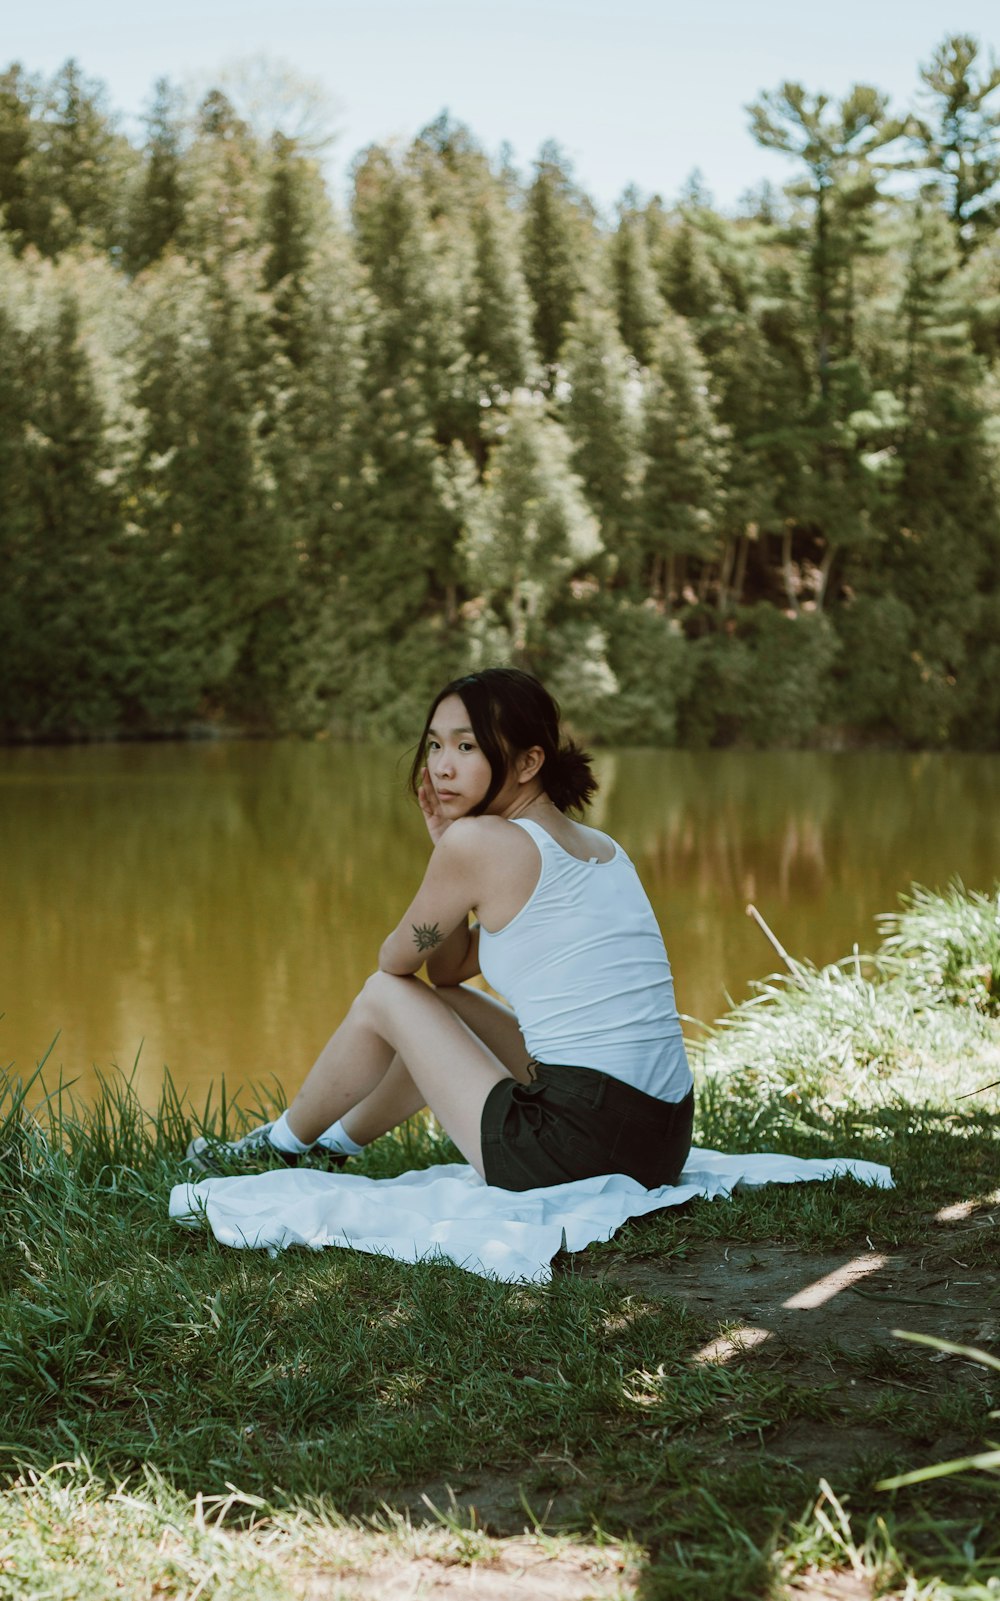 昼間、湖畔の緑の芝生に座る白いタンクトップと黒いズボンを着た女性